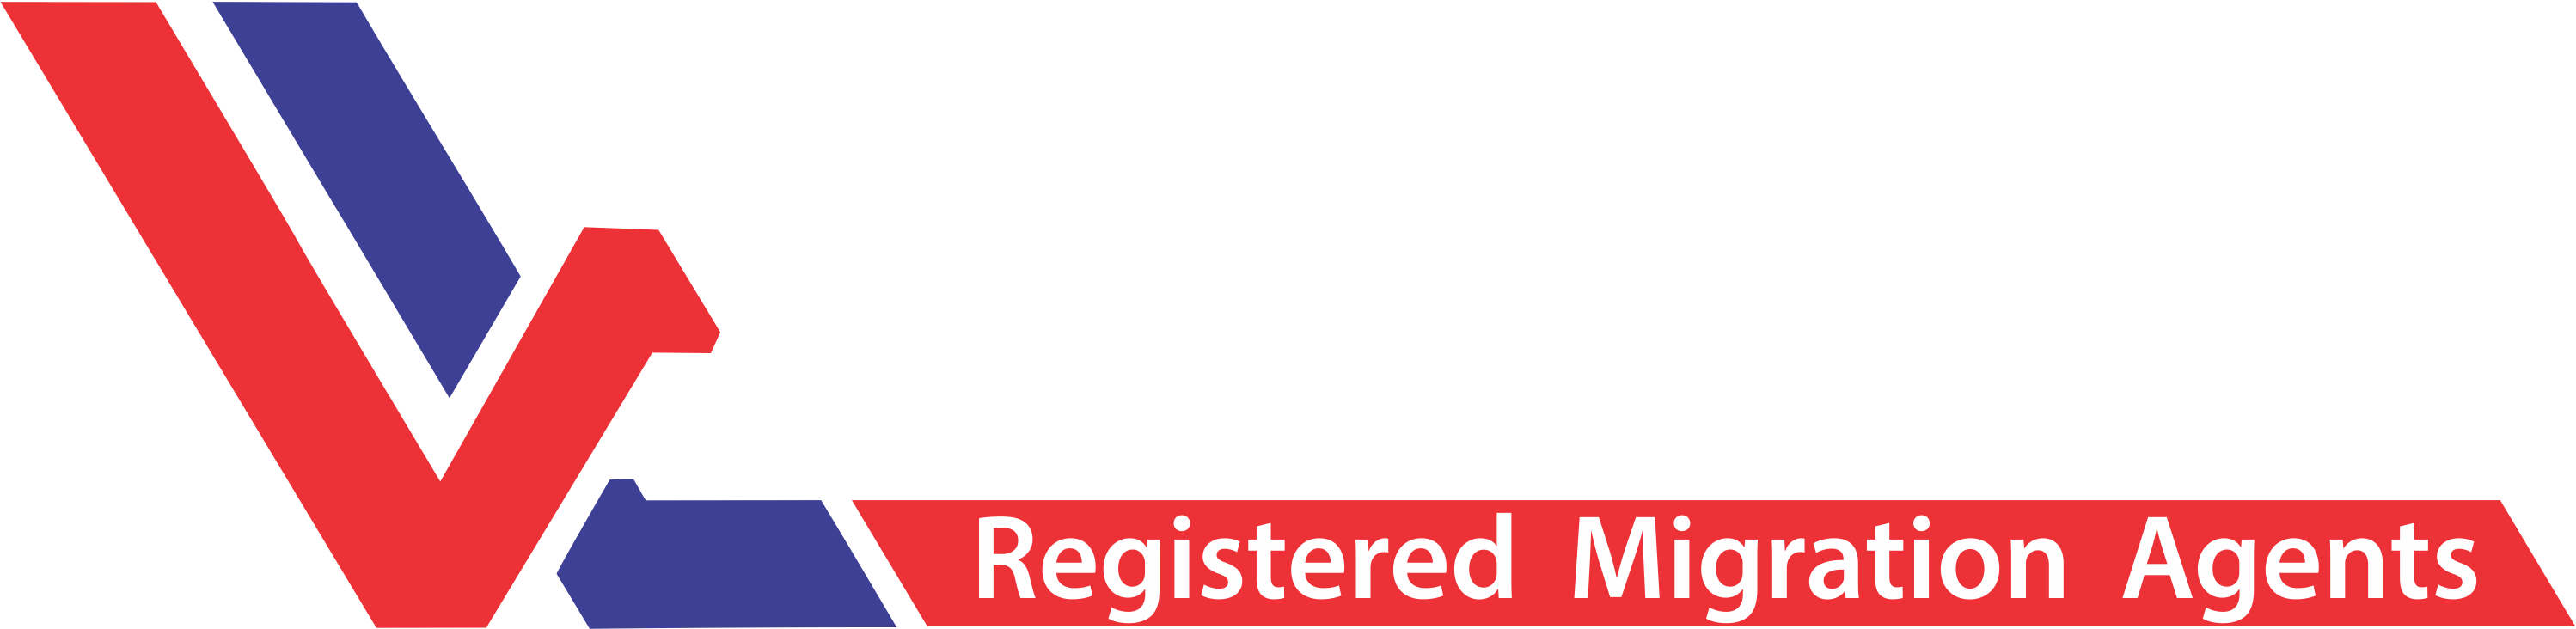 Visalink Registered Migration Agents